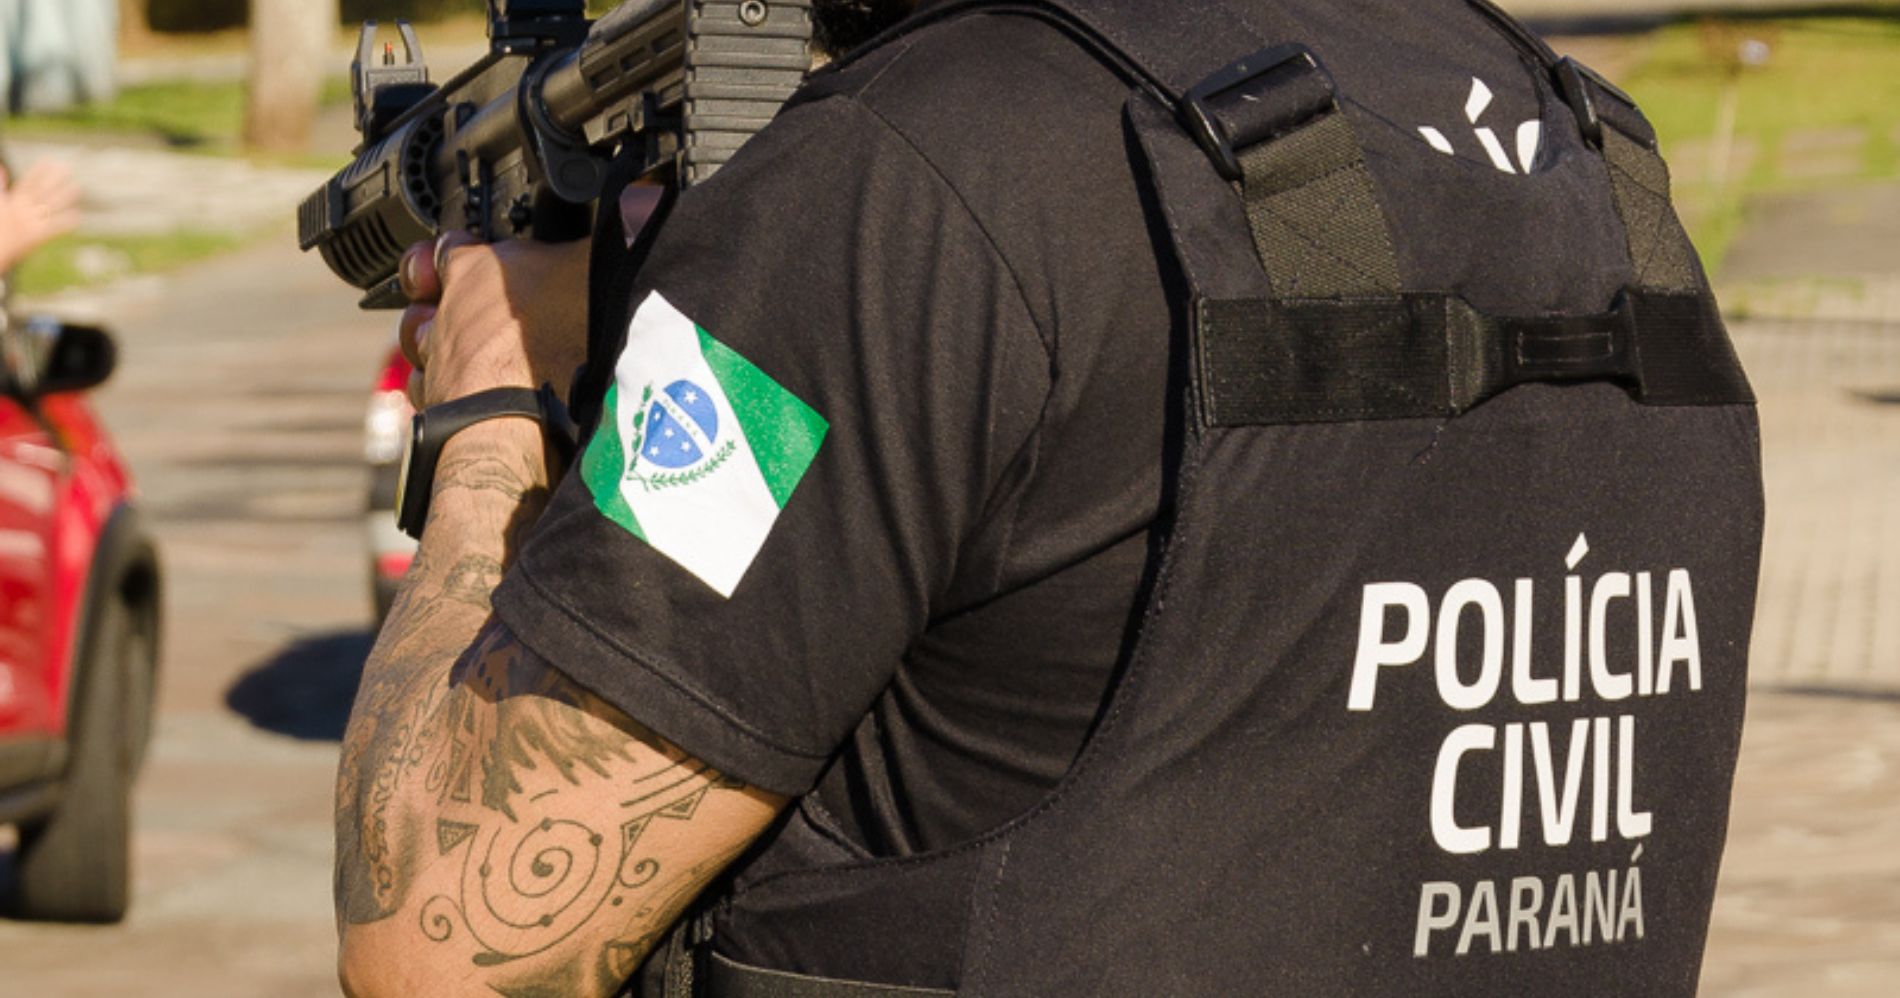 PCPR e PMPR conduzem prisão de seis homens em operação de saturação realizada em Piraquara